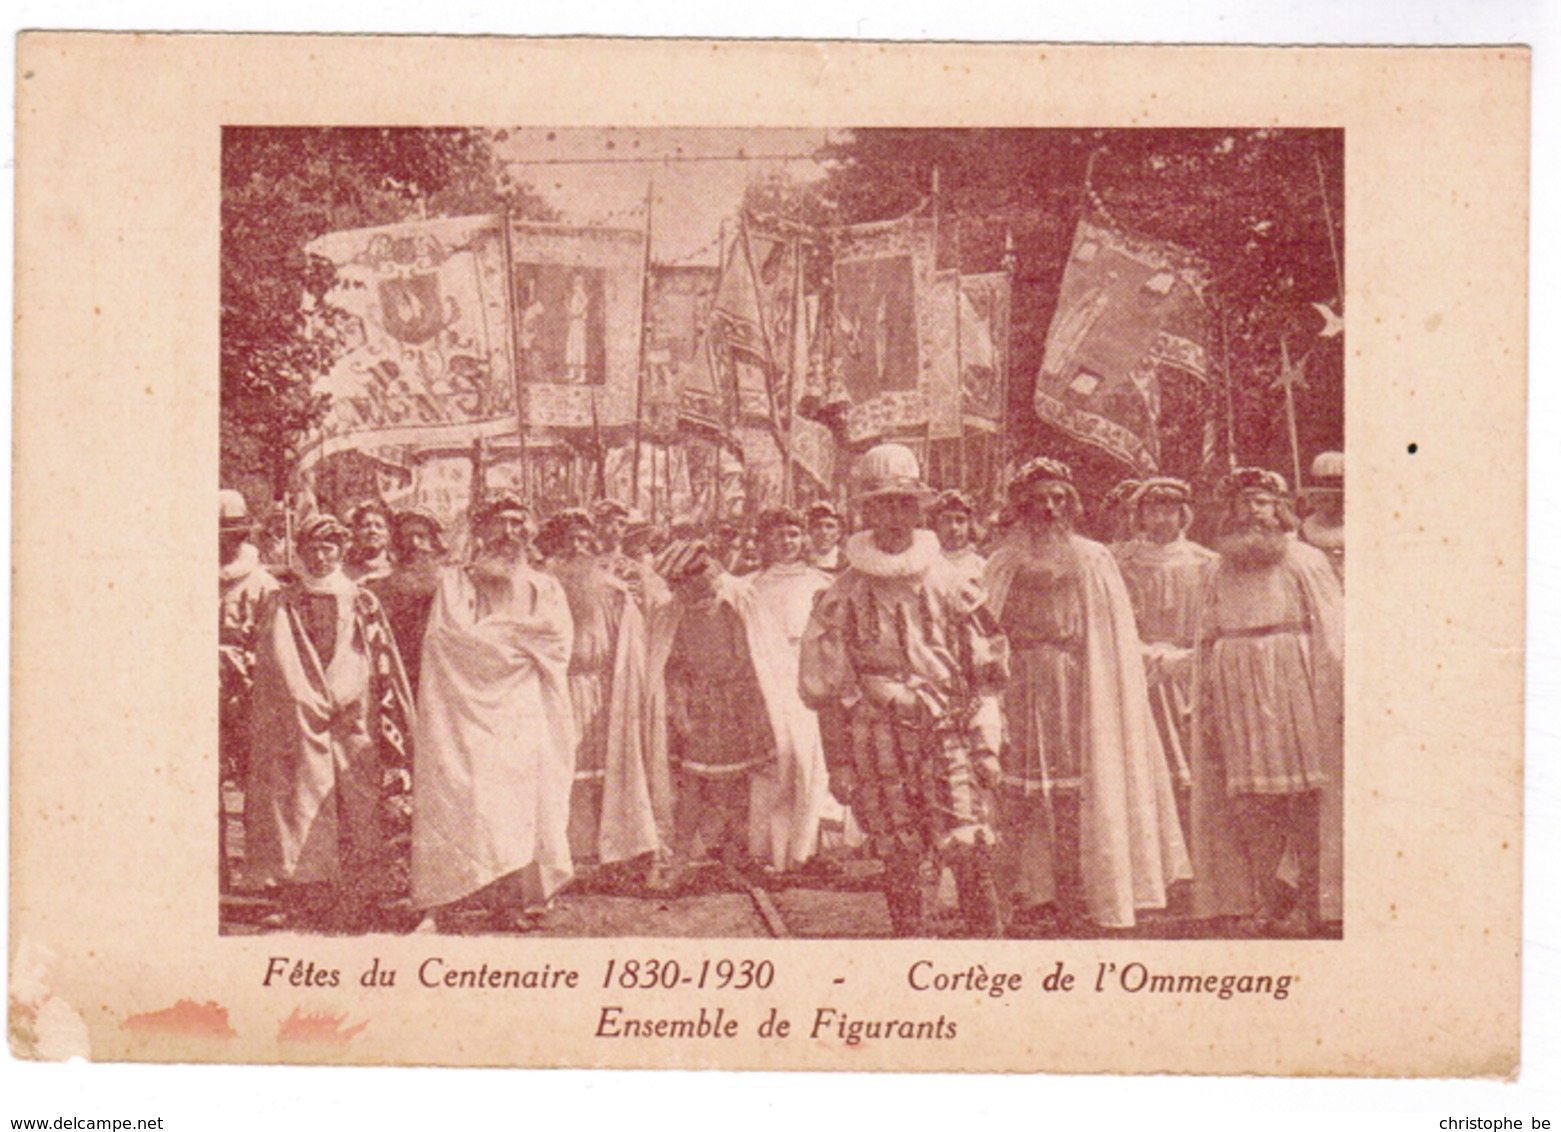 Brussel, Bruxelles, Fêtes Du Centenaire, 1830-1930 Cortege De L'Ommegang (pk52913) - Feesten En Evenementen